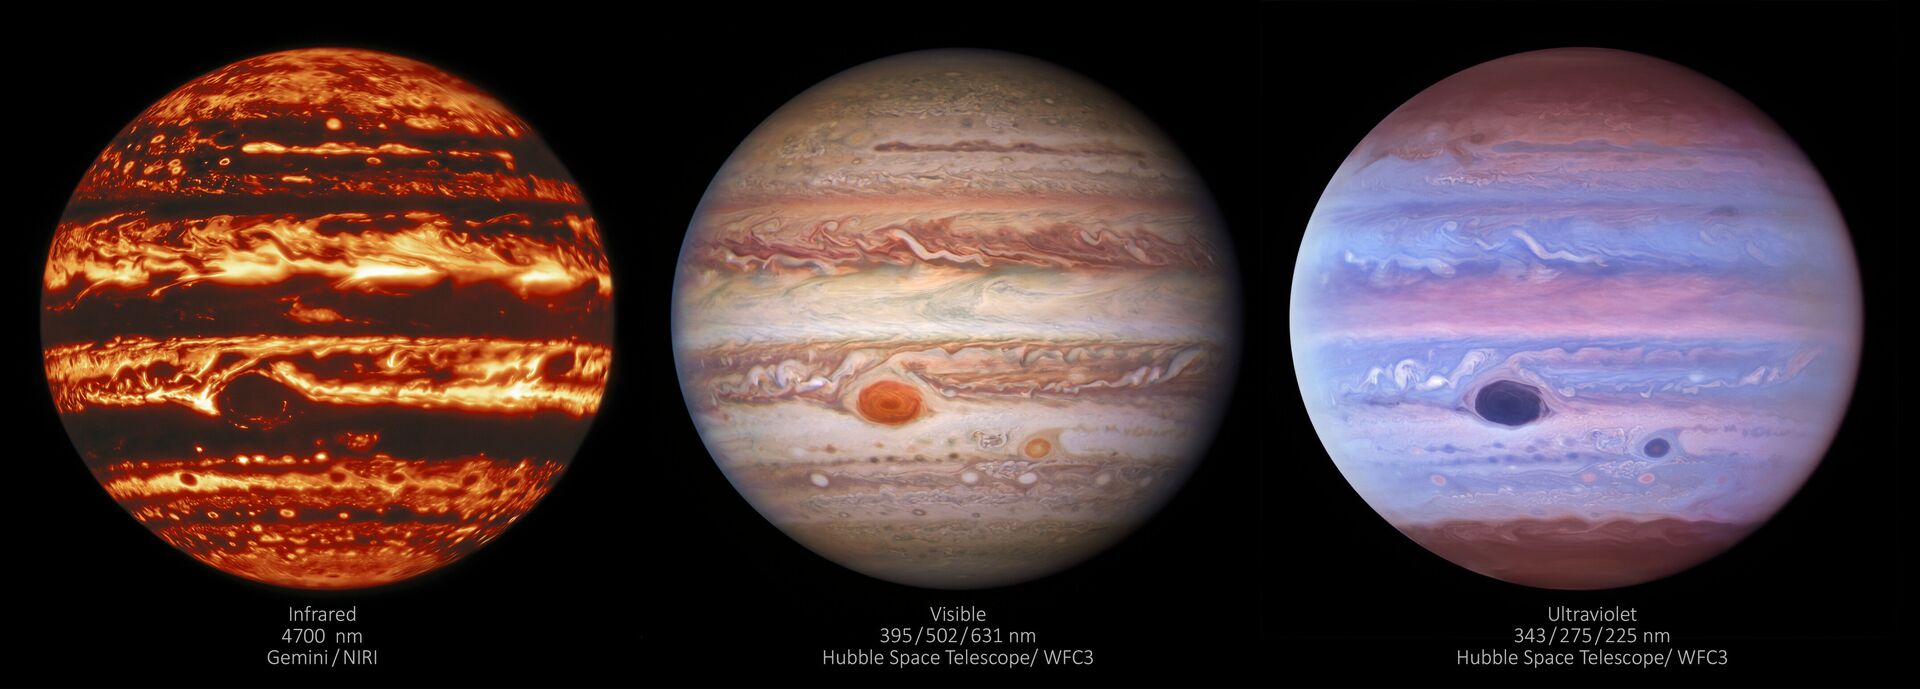 FOTOS incríveis revelam momentos únicos de Júpiter em diferentes comprimentos de onda de luz - Sputnik Brasil, 1920, 12.05.2021